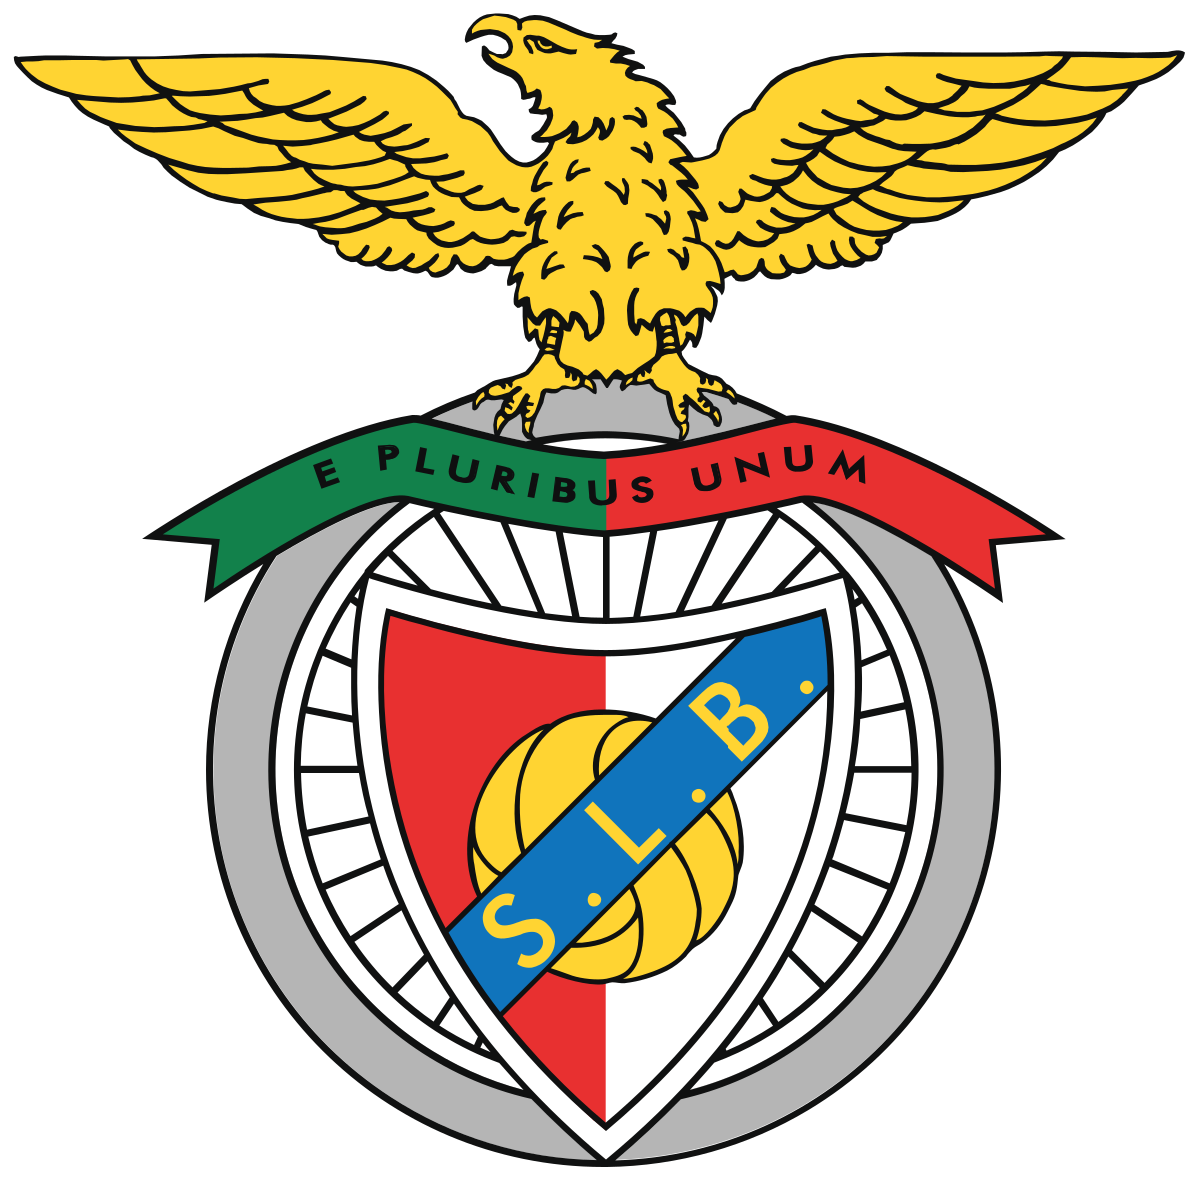 Basquetebol do Sport Lisboa e Benfica – Wikipédia, a enciclopédia livre